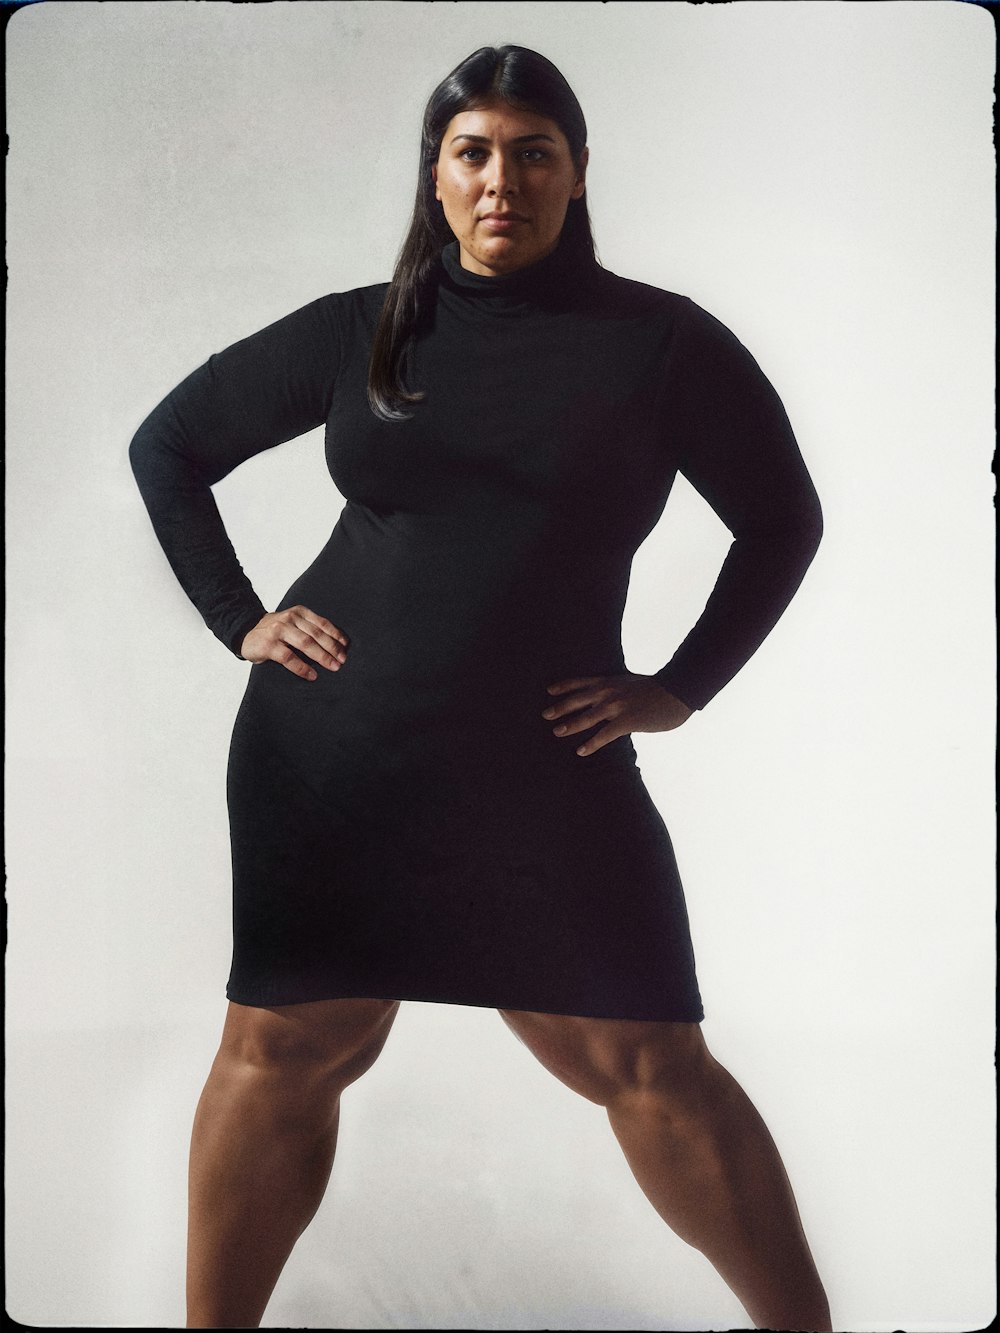 Imagen generada por Ai de una modelo de cabello oscuro con vestido negro con las manos en las caderas